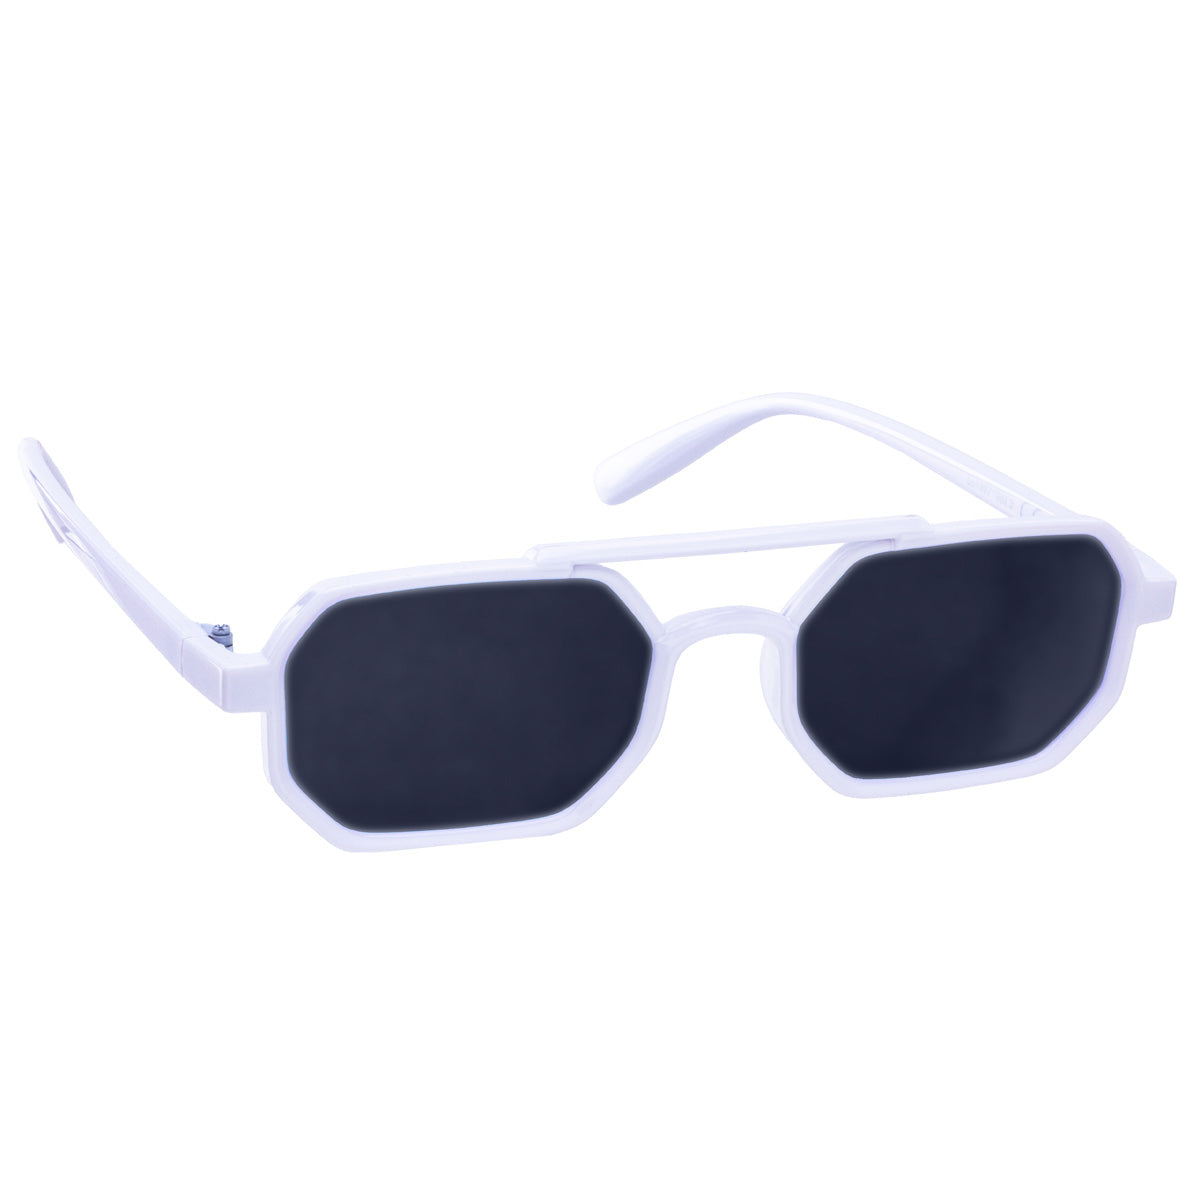 Angular rectangular sunglasses